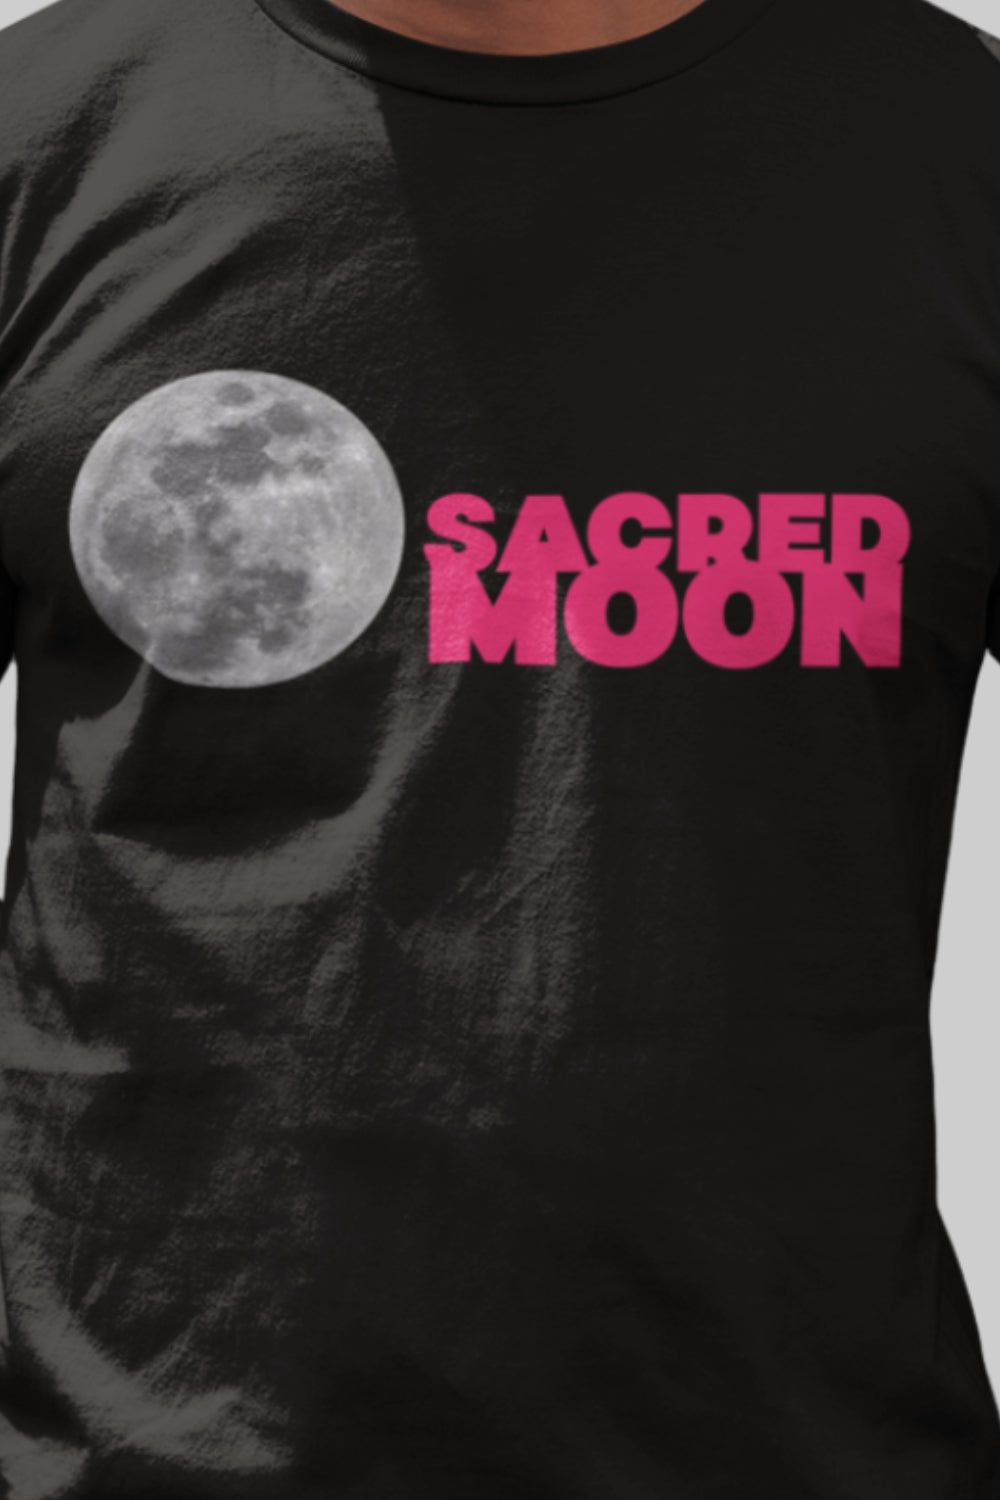 Sacred Moon Graphic Printed Black Tshirt